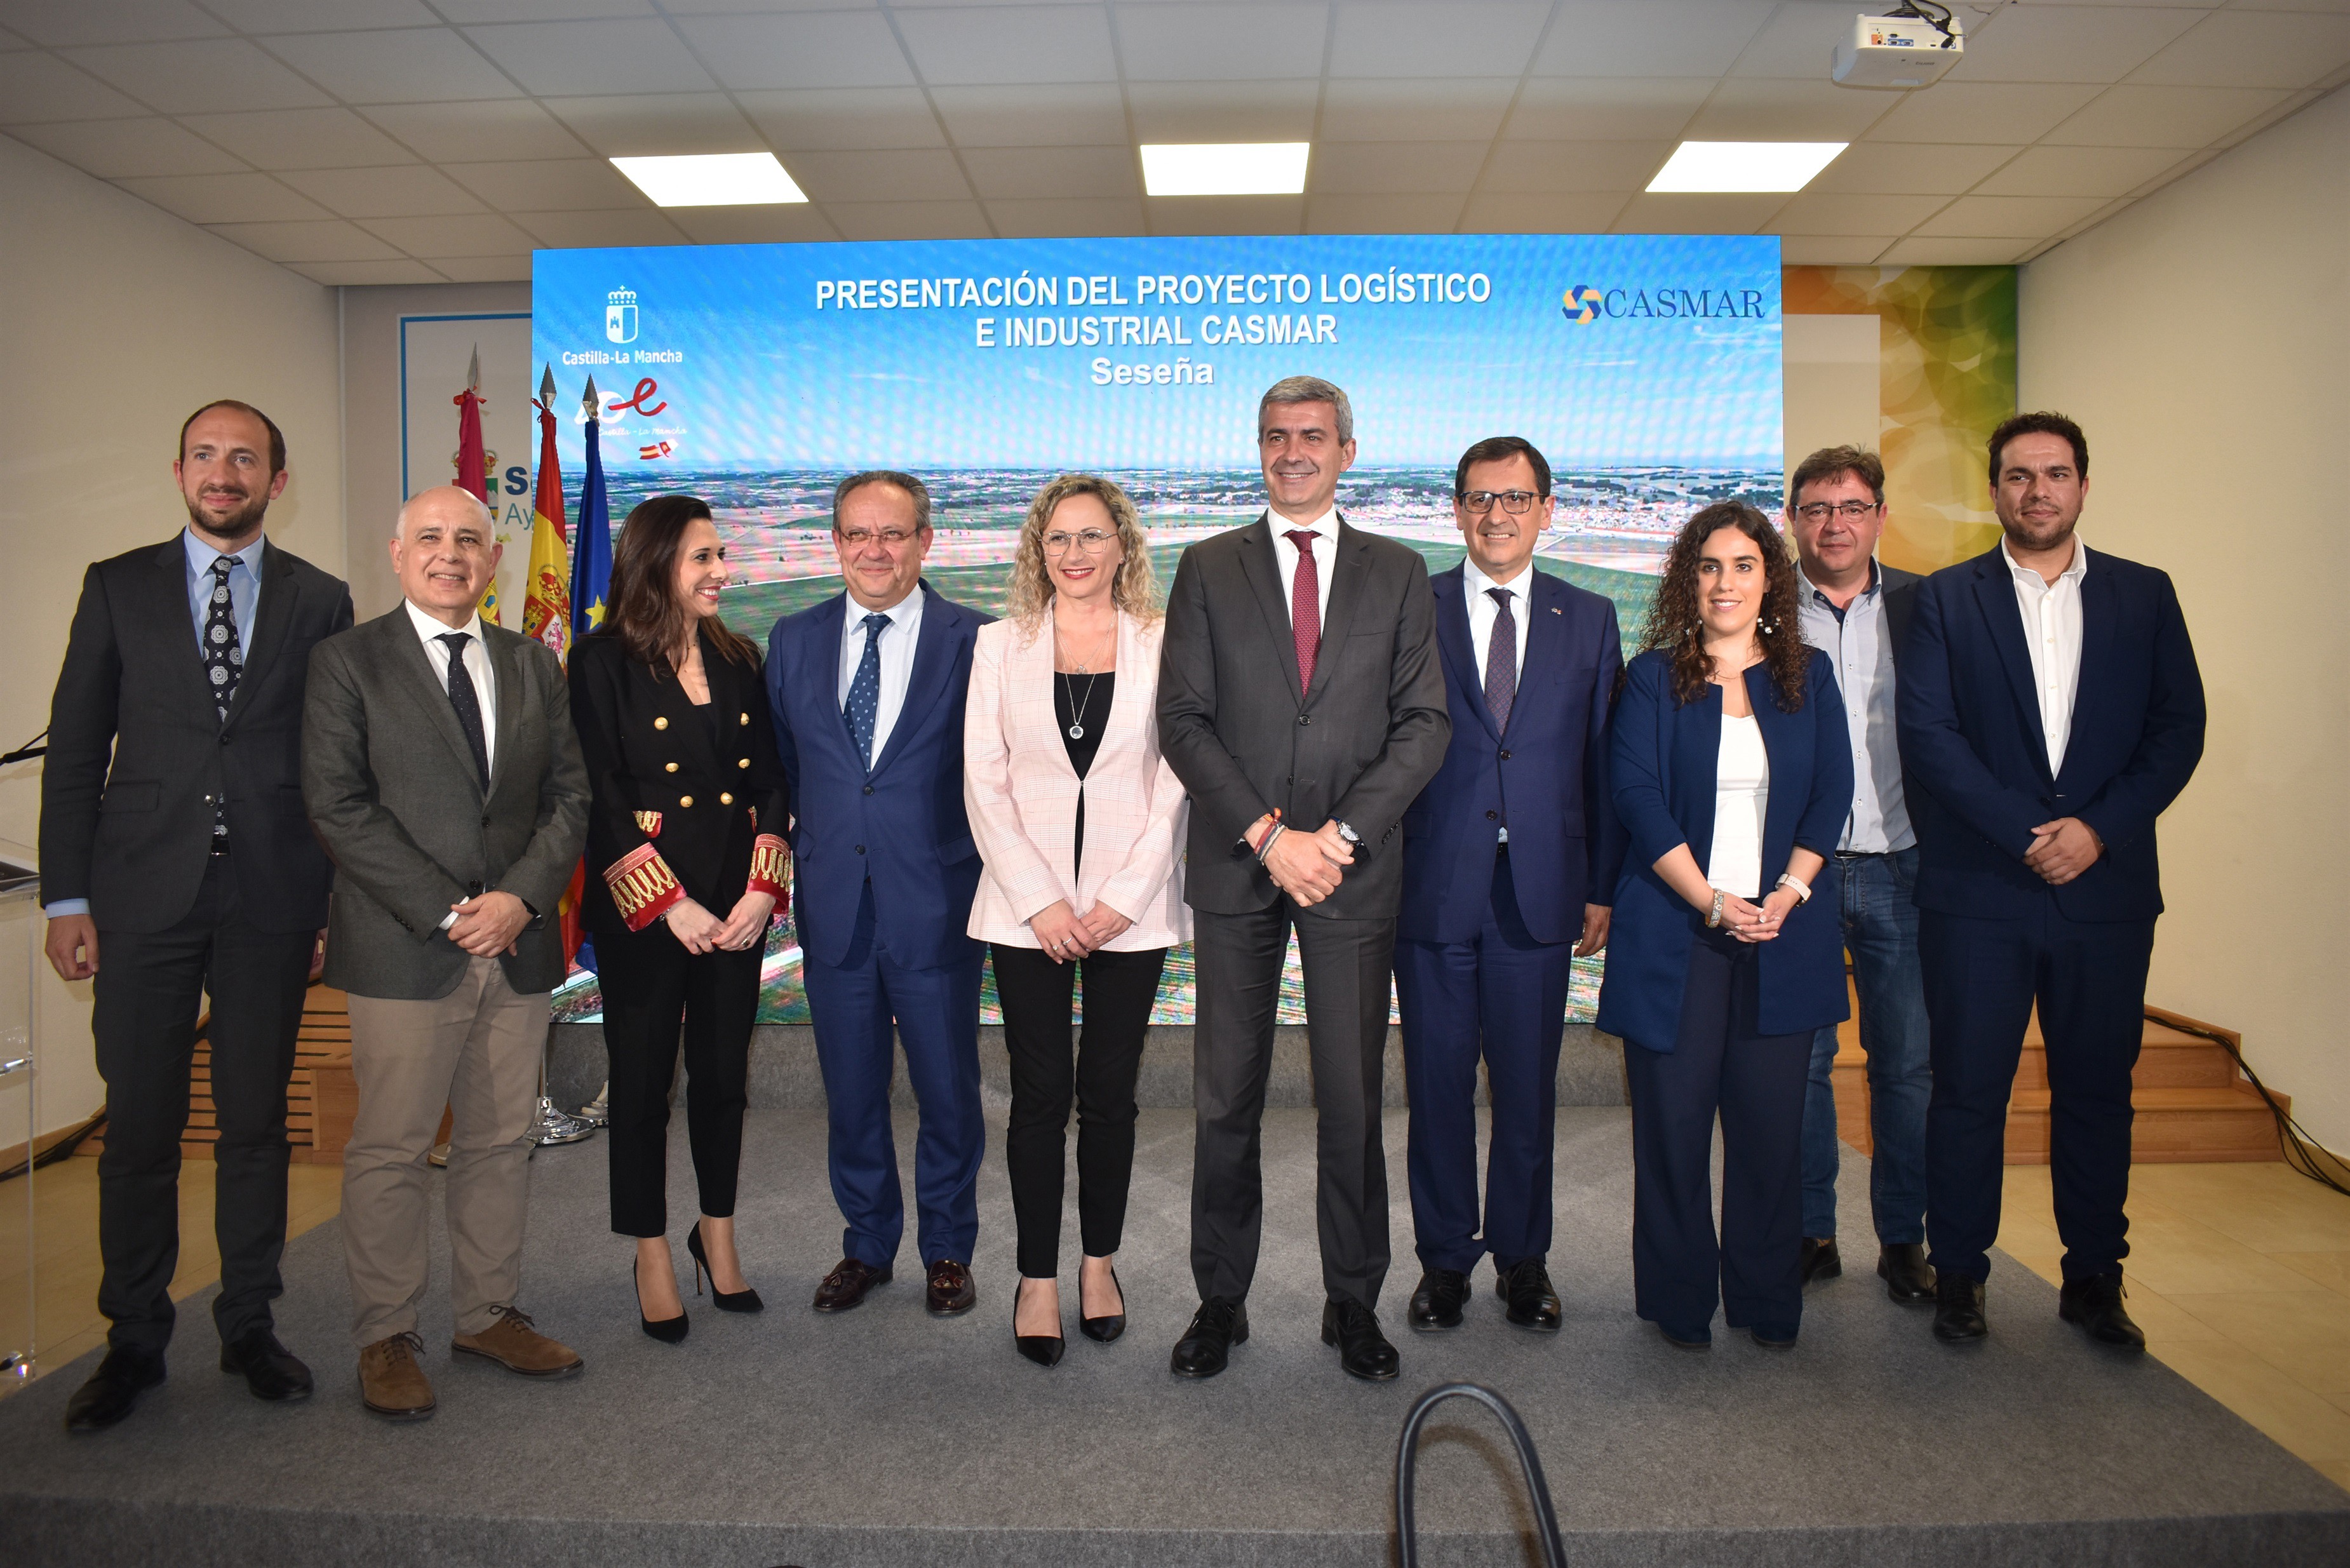 El Gobierno de Castilla-La Mancha ha impulsado, junto con el Ayuntamiento de Seseña y el grupo EPSA, el proyecto CASMAR para la creación de un parque industrial logístico digital que supondrá la generación de 12.000 puestos de trabajo.